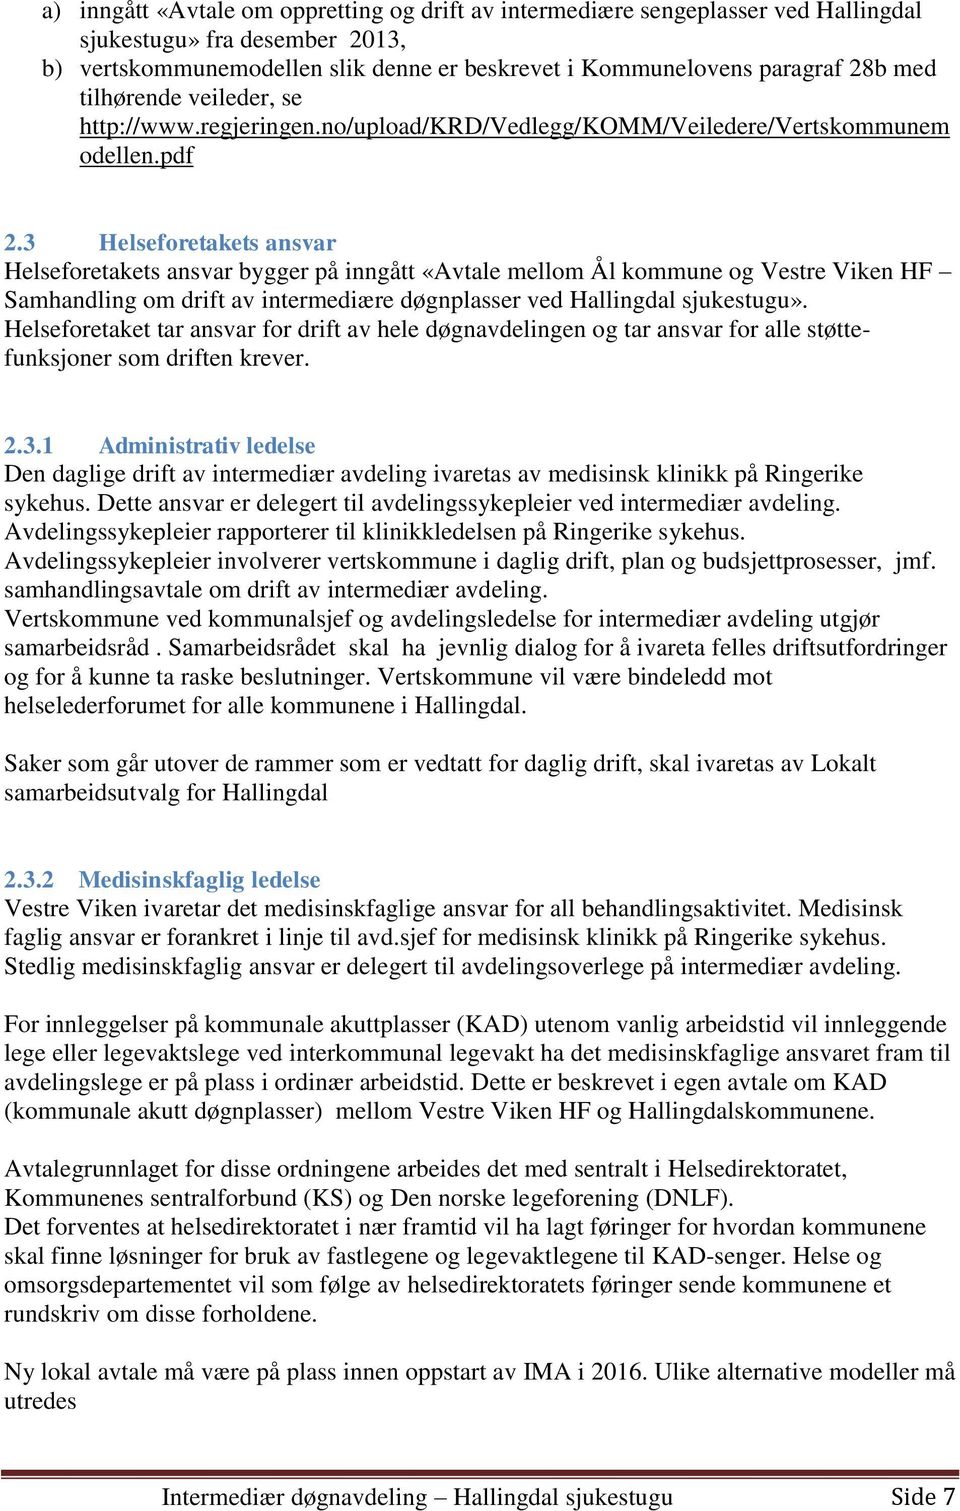 3 Helseforetakets ansvar Helseforetakets ansvar bygger på inngått «Avtale mellom Ål kommune og Vestre Viken HF Samhandling om drift av intermediære døgnplasser ved Hallingdal sjukestugu».